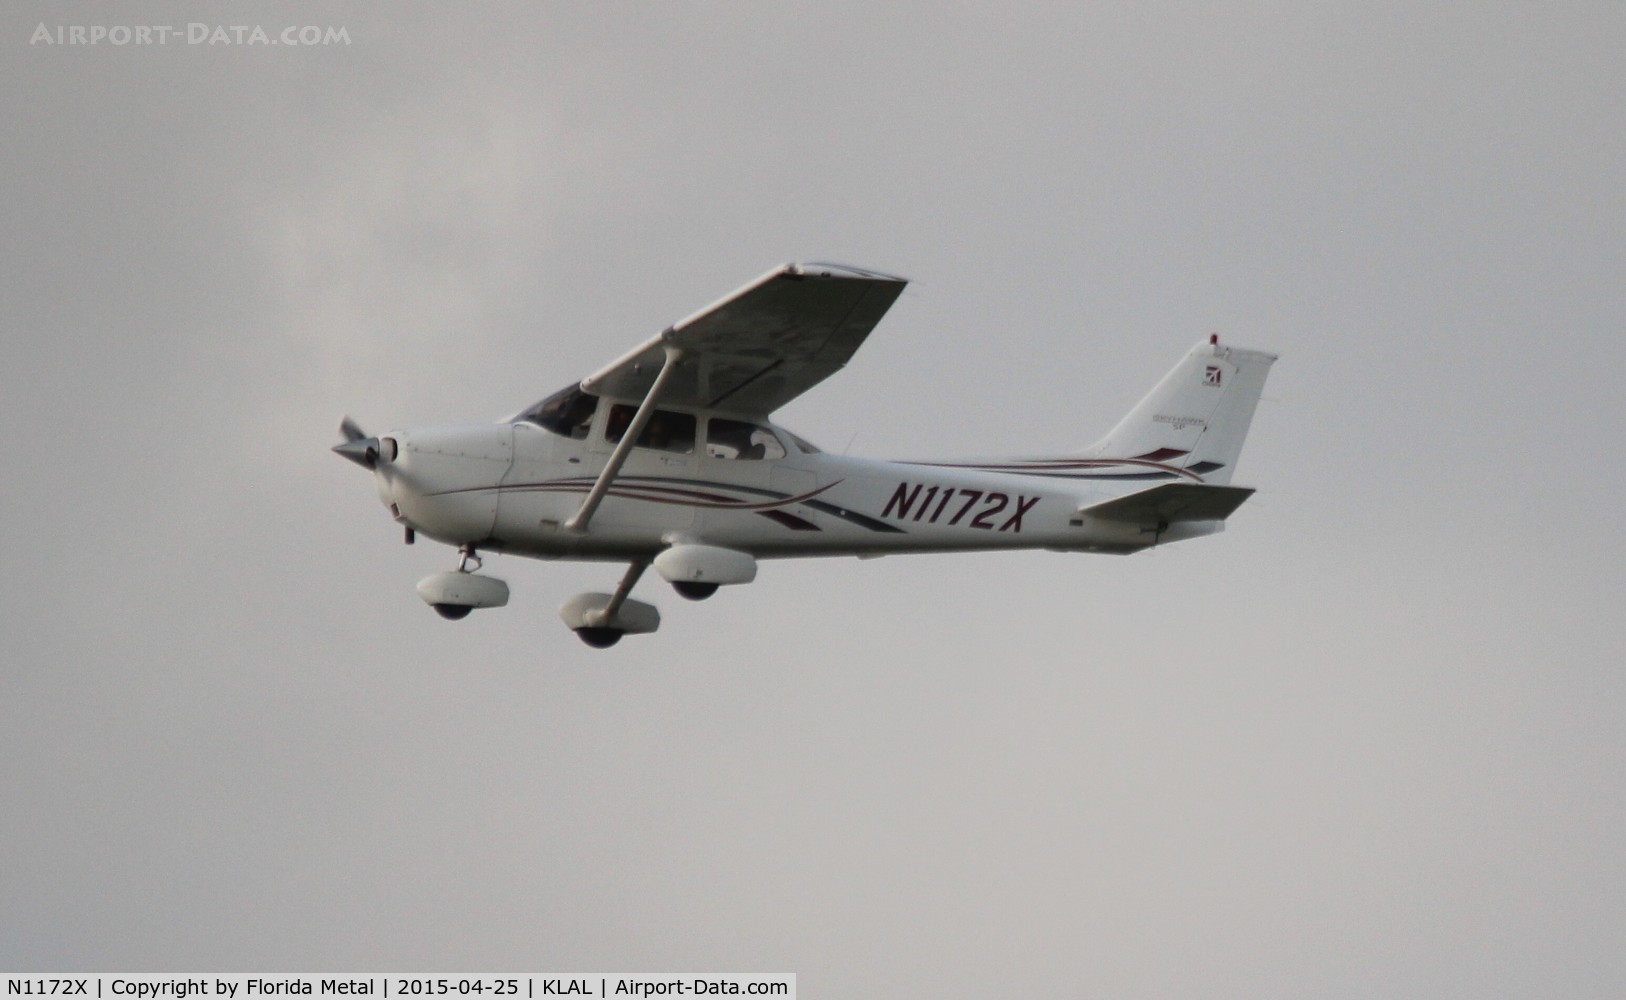 N1172X, 2006 Cessna 172S Skyhawk SP C/N 172S10378, SNF LAL 2015